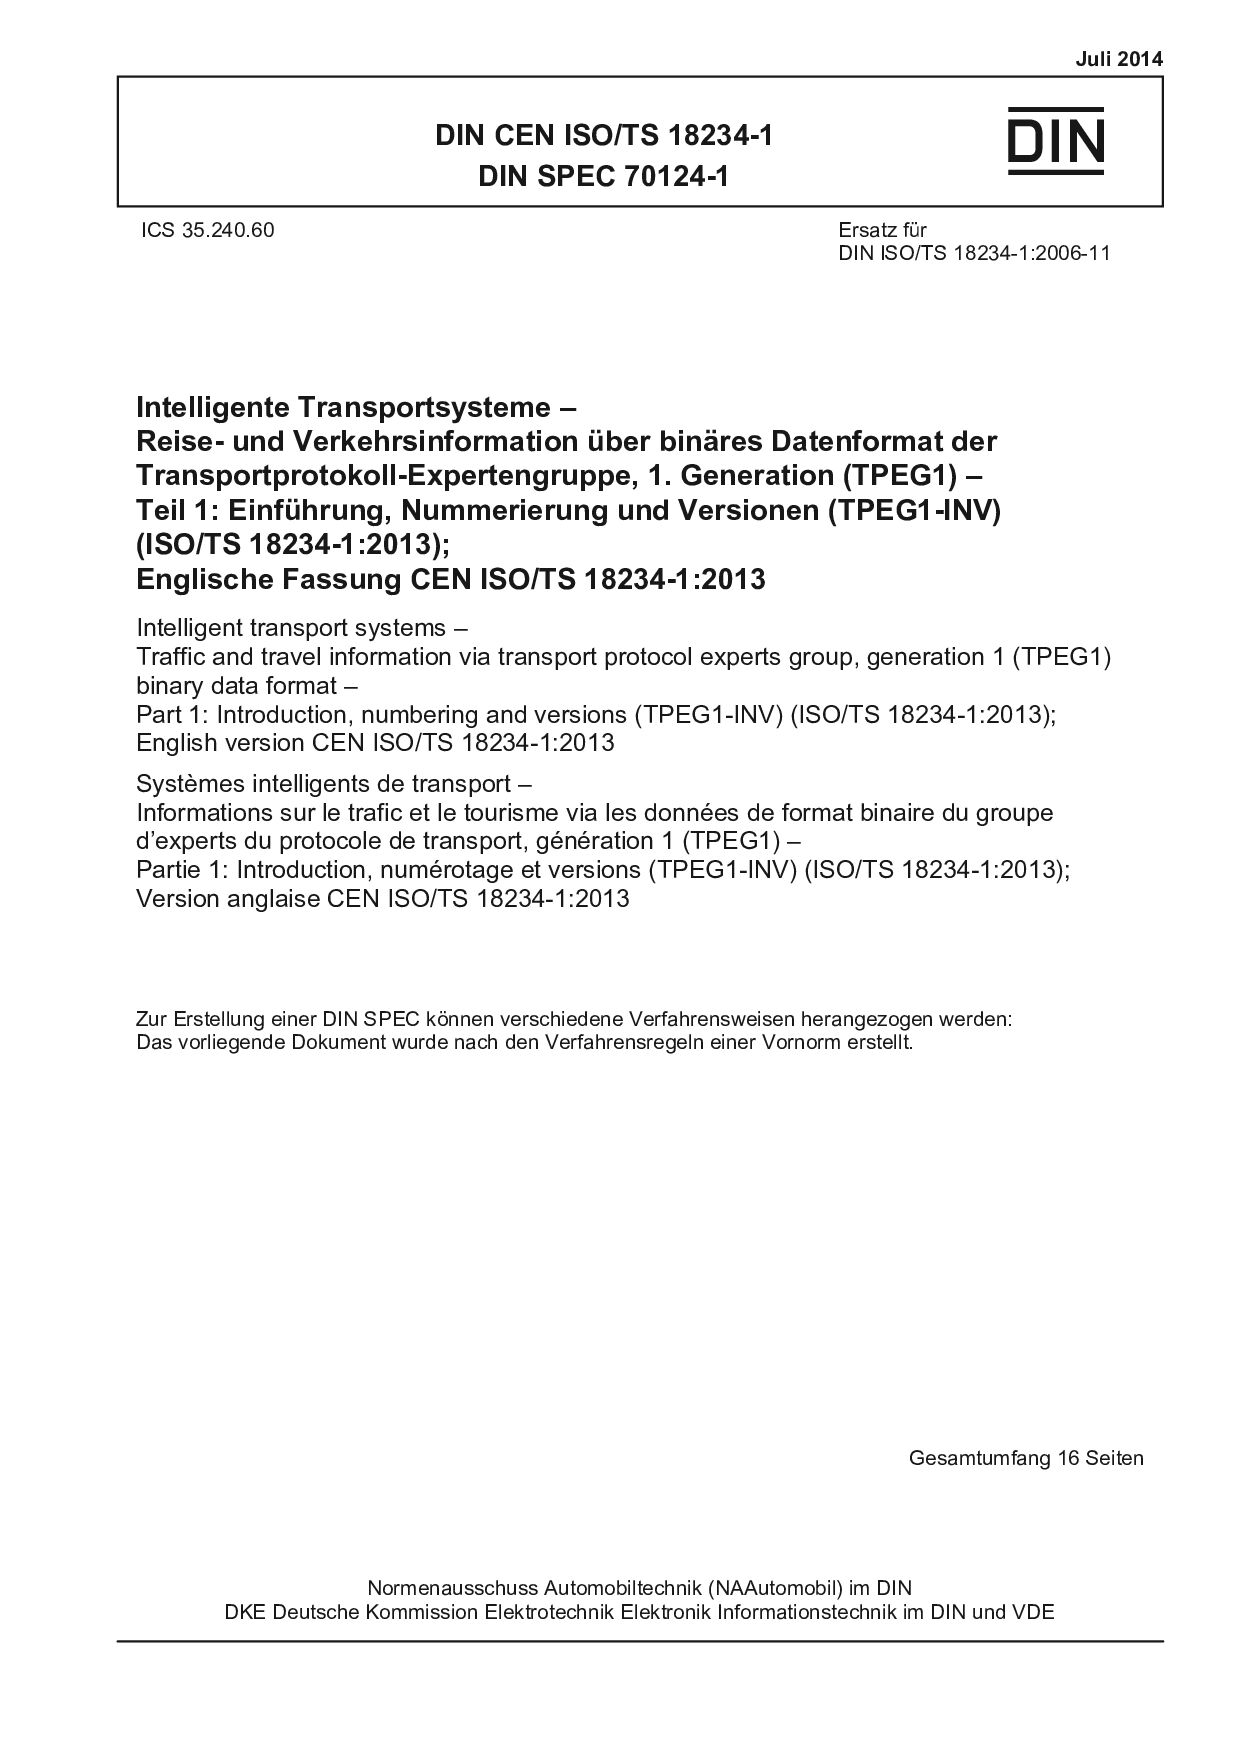 DIN CEN ISO/TS 18234-1:2014*DIN SPEC 70124-1:2014封面图